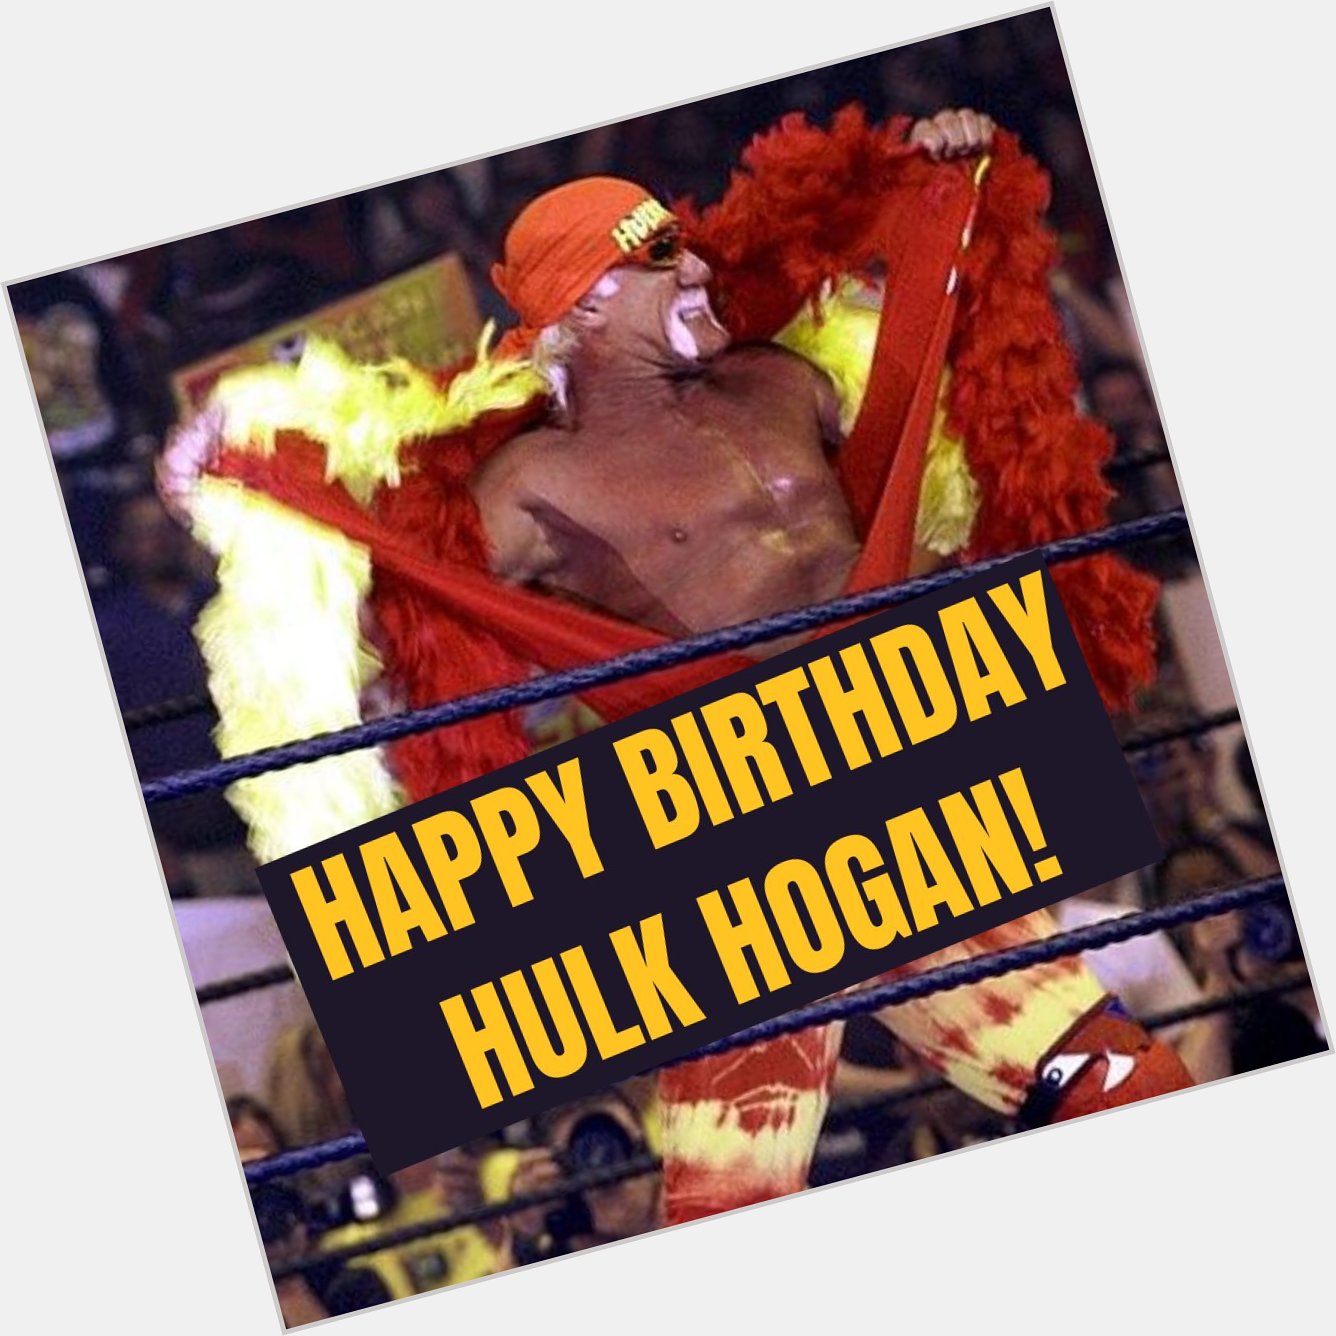 HAPPY BIRTHDAY! Hulk Hogan turns 67 today. 